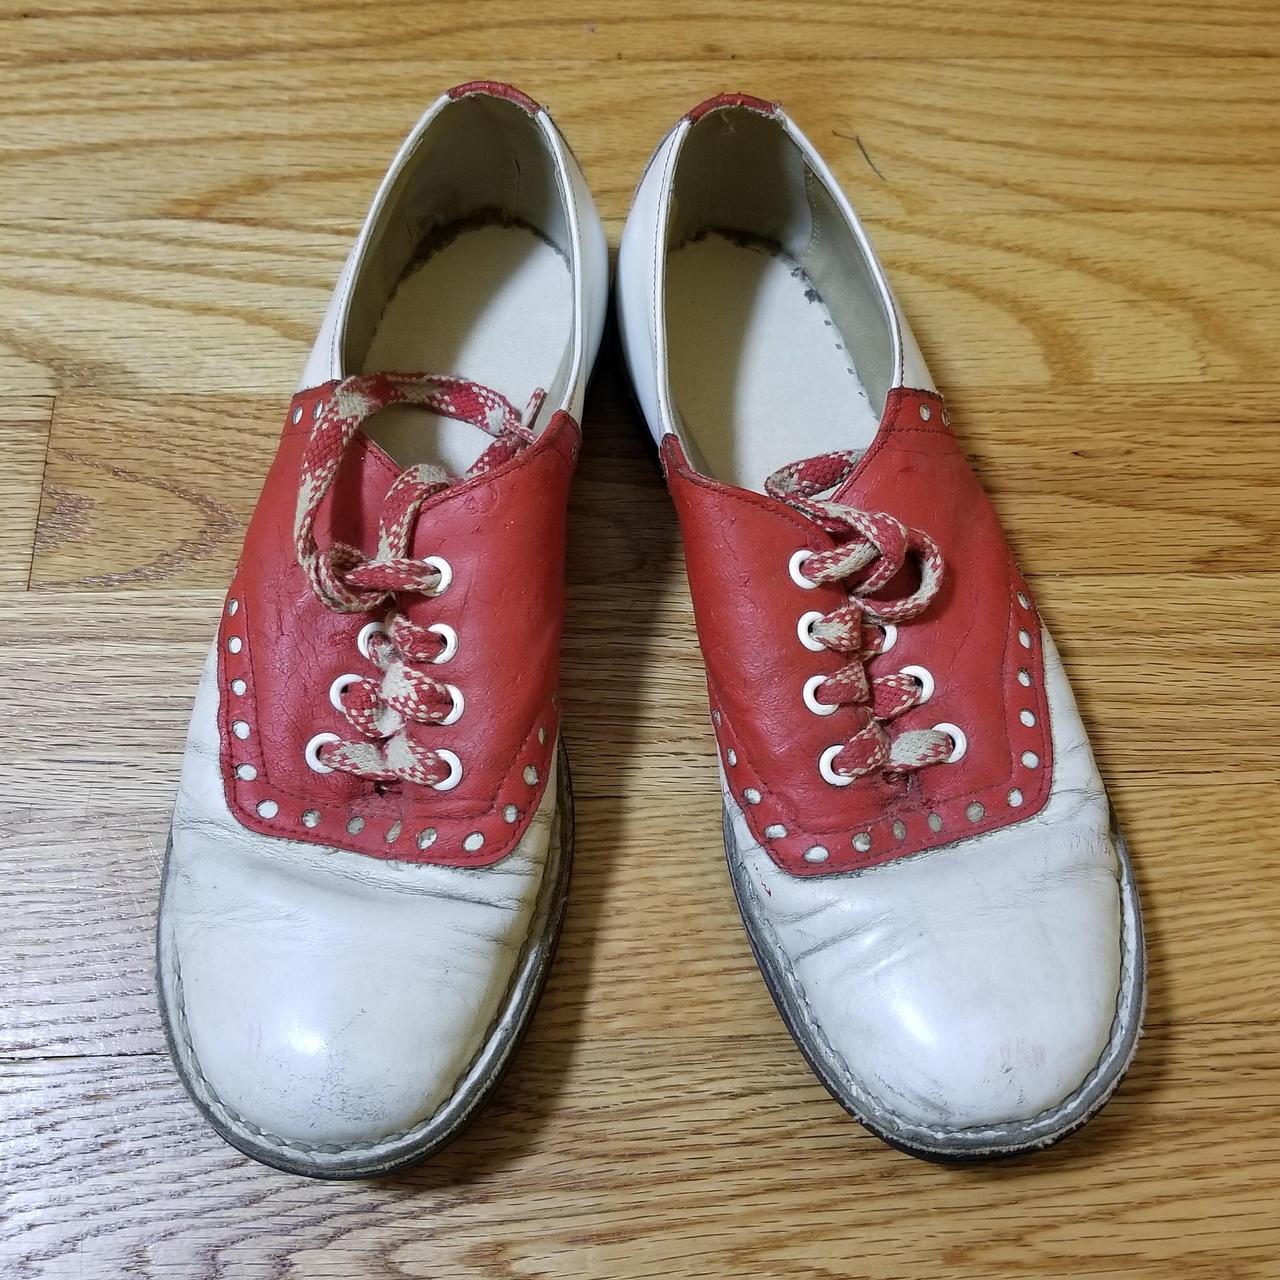 Vintage red saddle shoes. Depop payments only.... - Depop